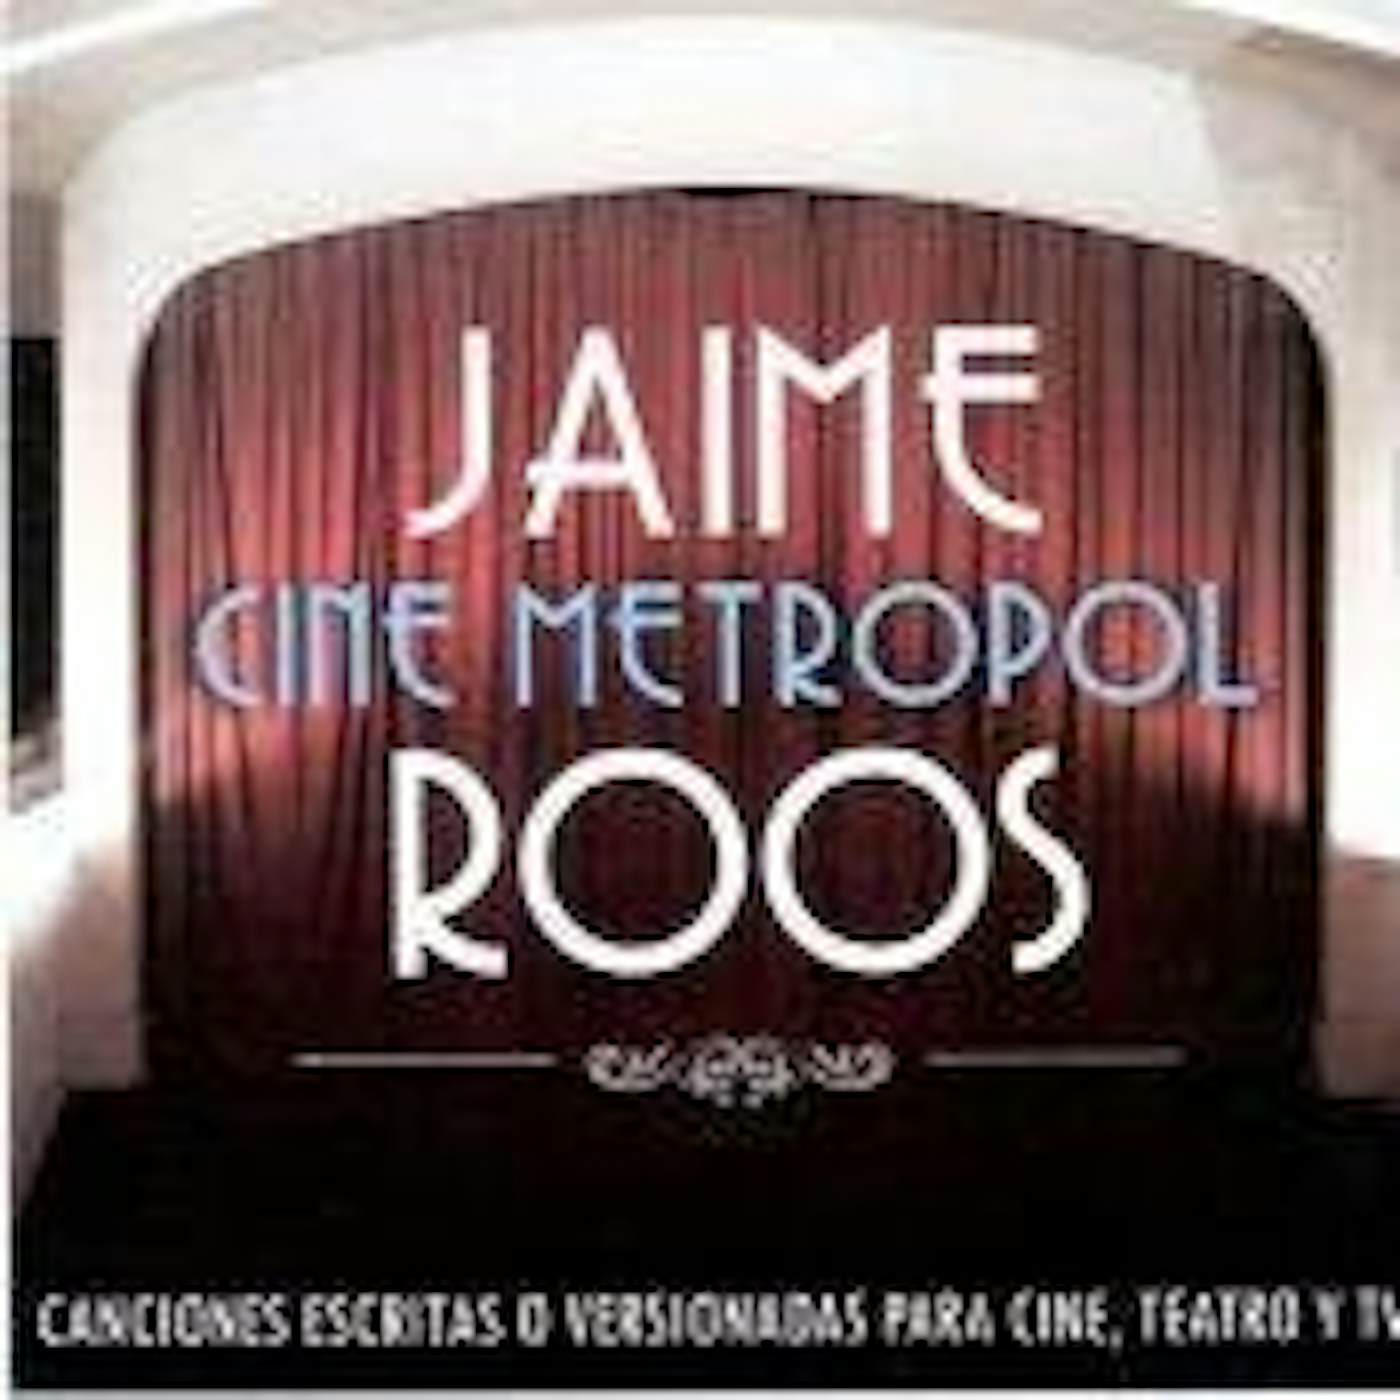 Jaime Roos CINE METROPOL CD